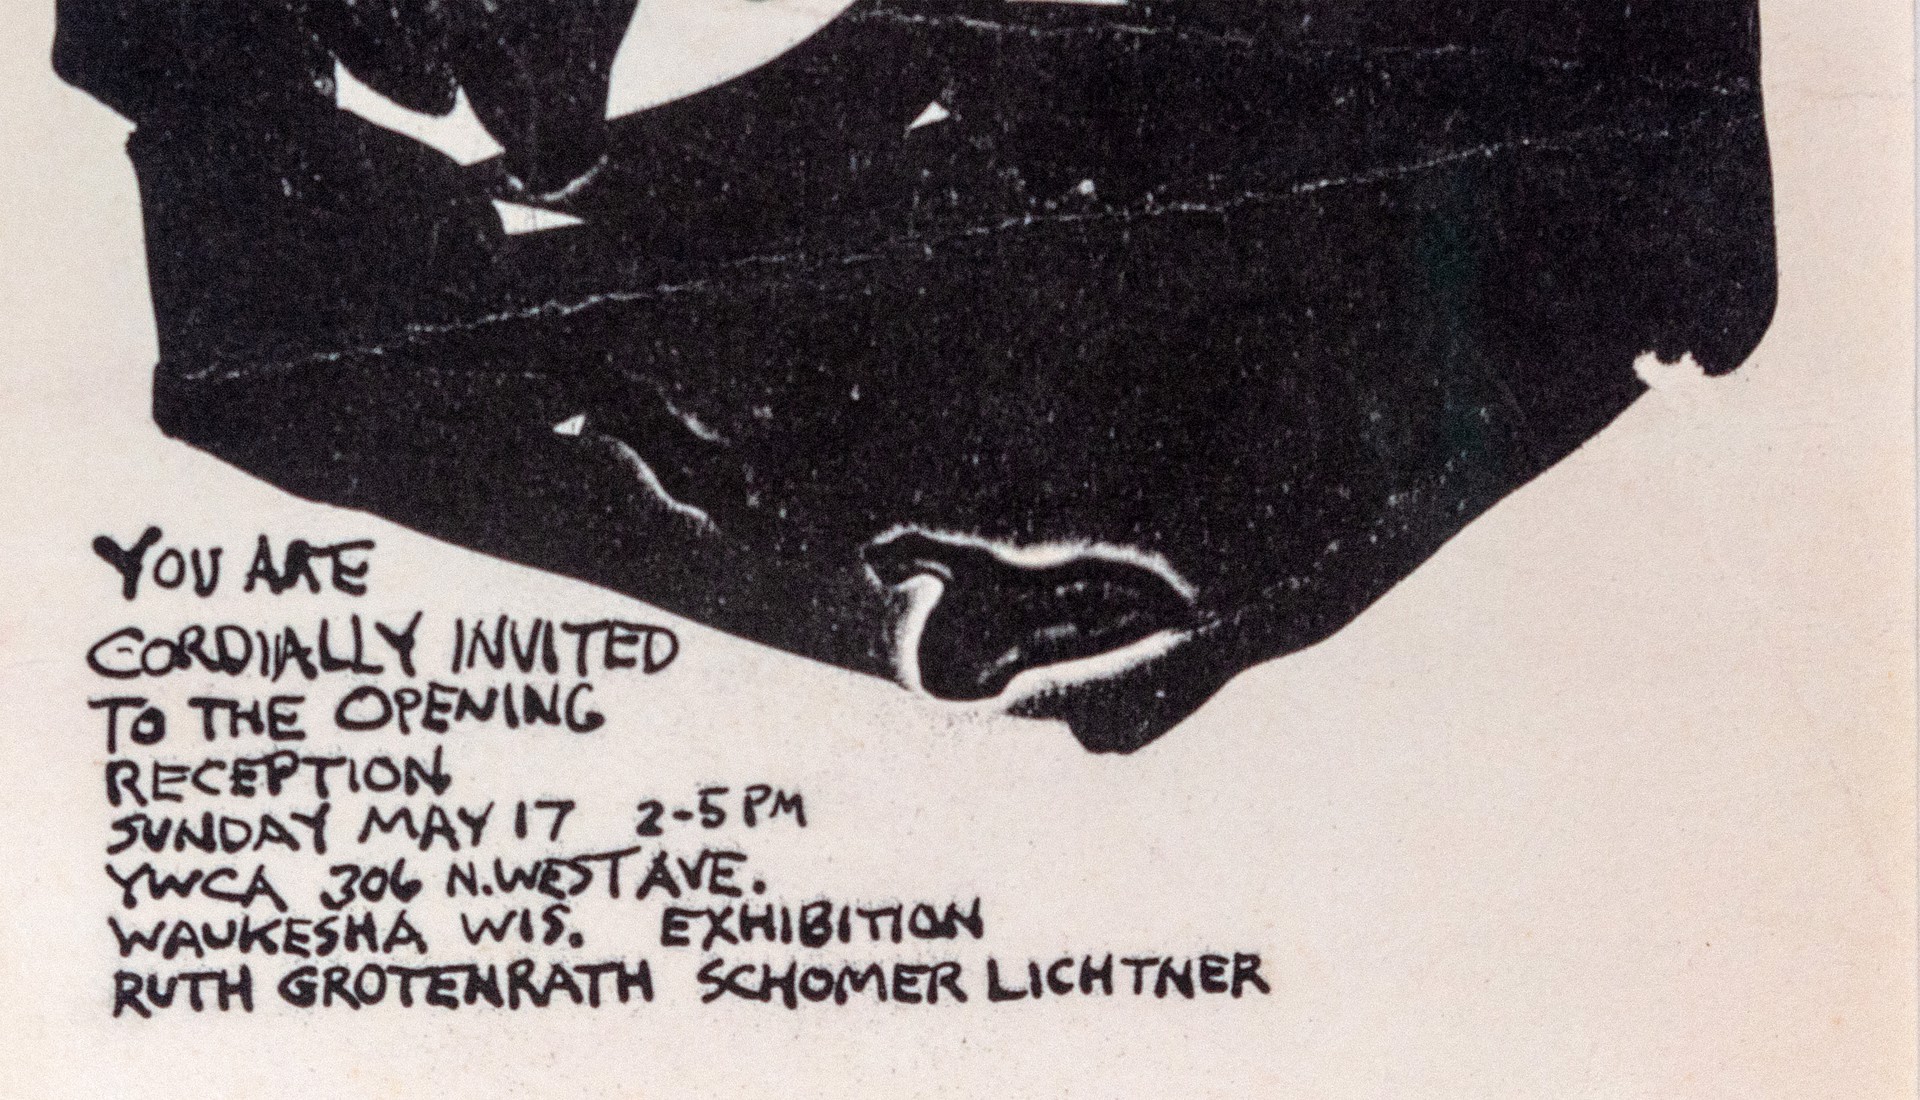 Exhibition Invitation by Schomer Lichtner